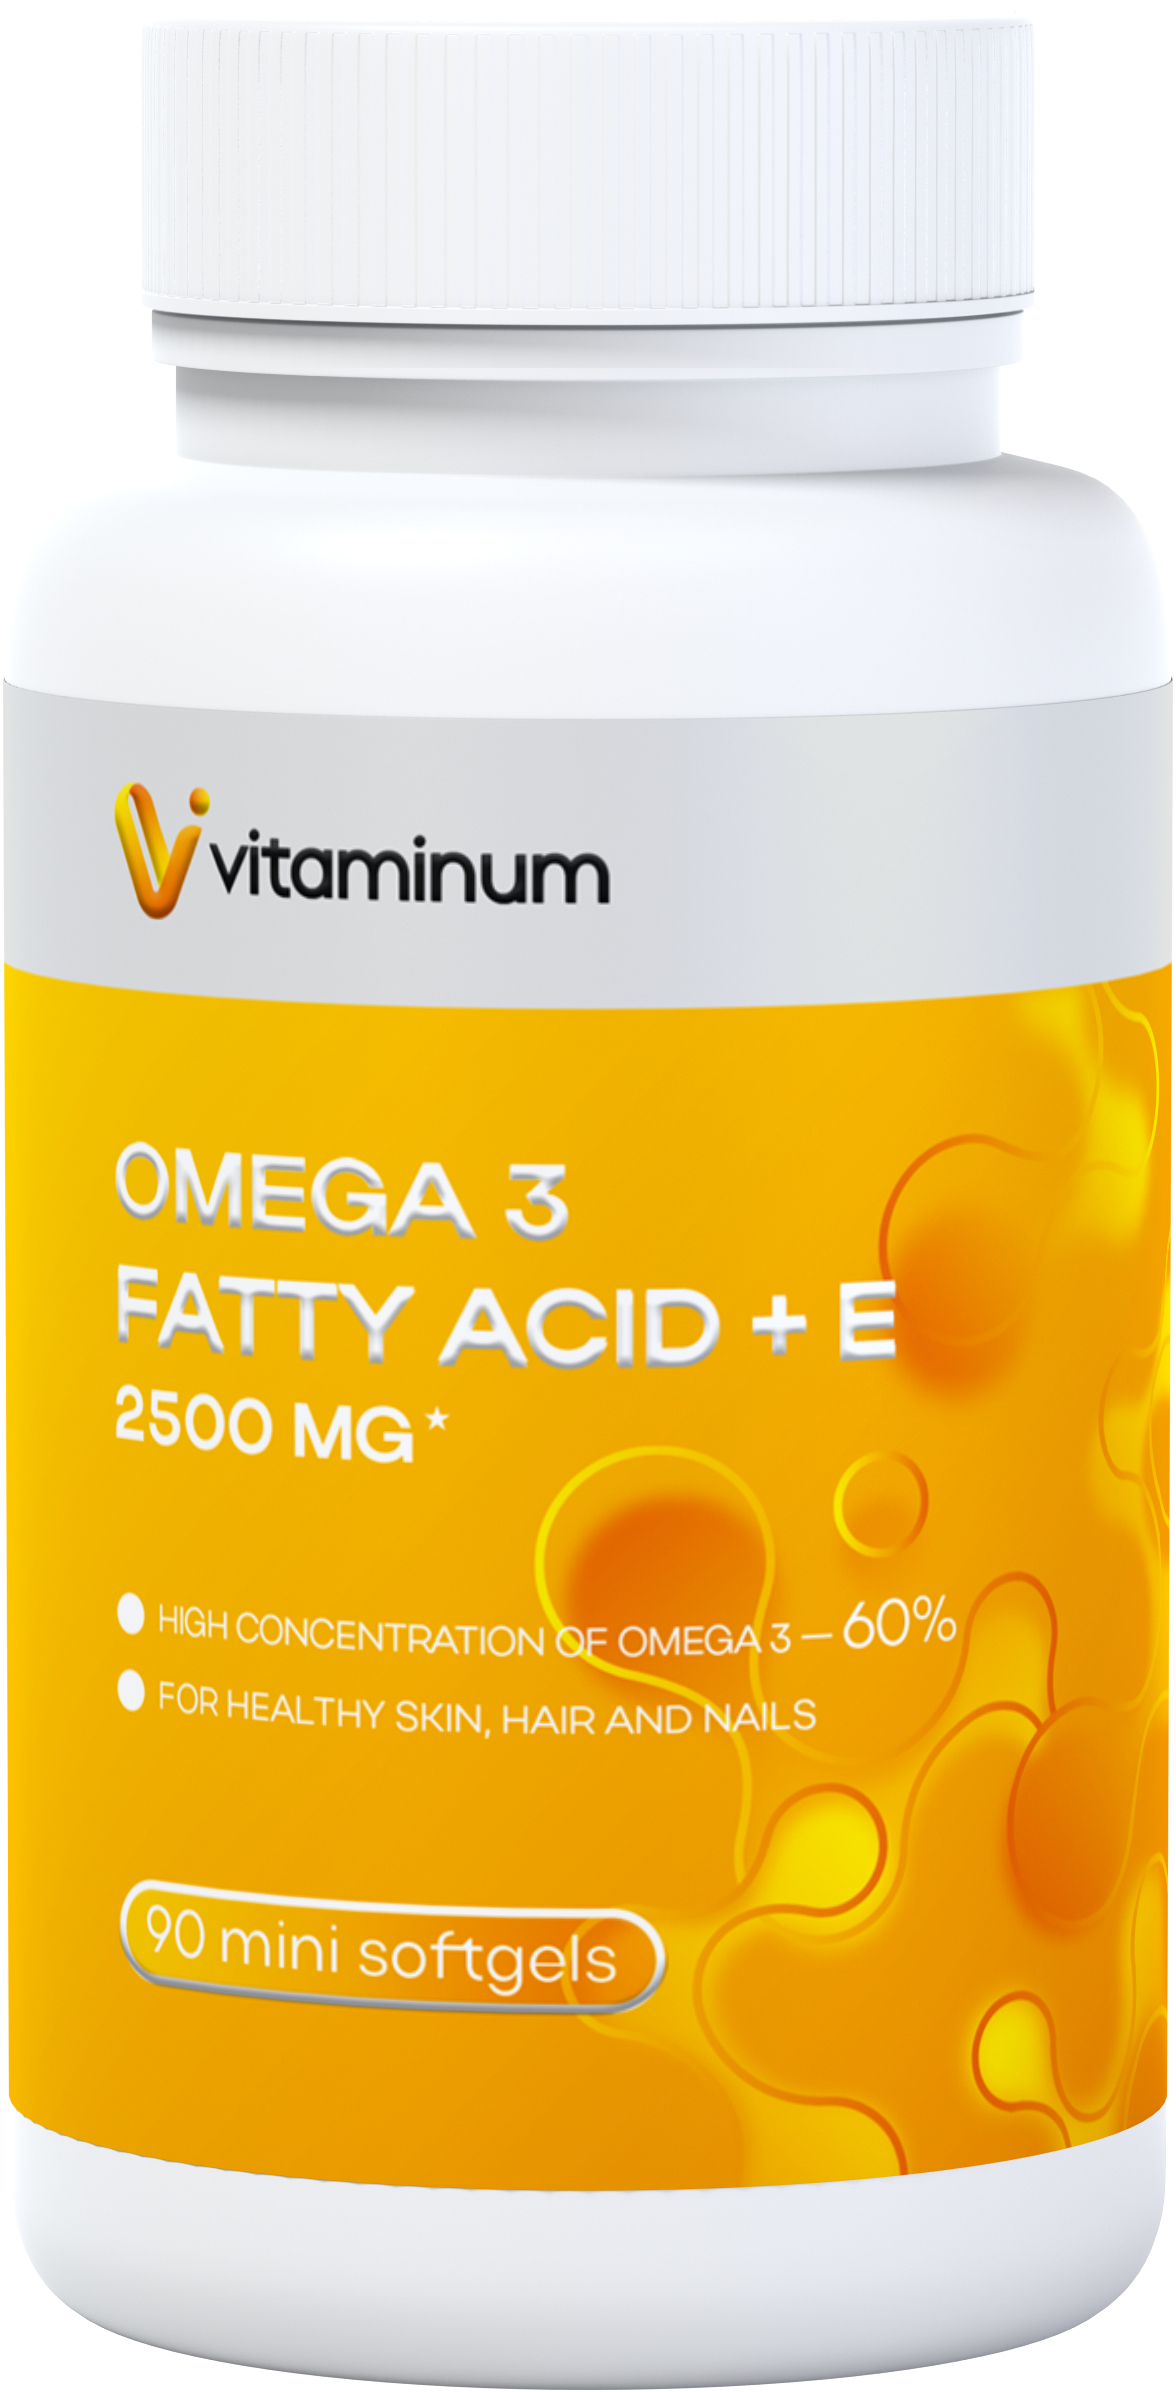  Vitaminum ОМЕГА 3 60% + витамин Е (2500 MG*) 90 капсул 700 мг   в Стерлитамаке